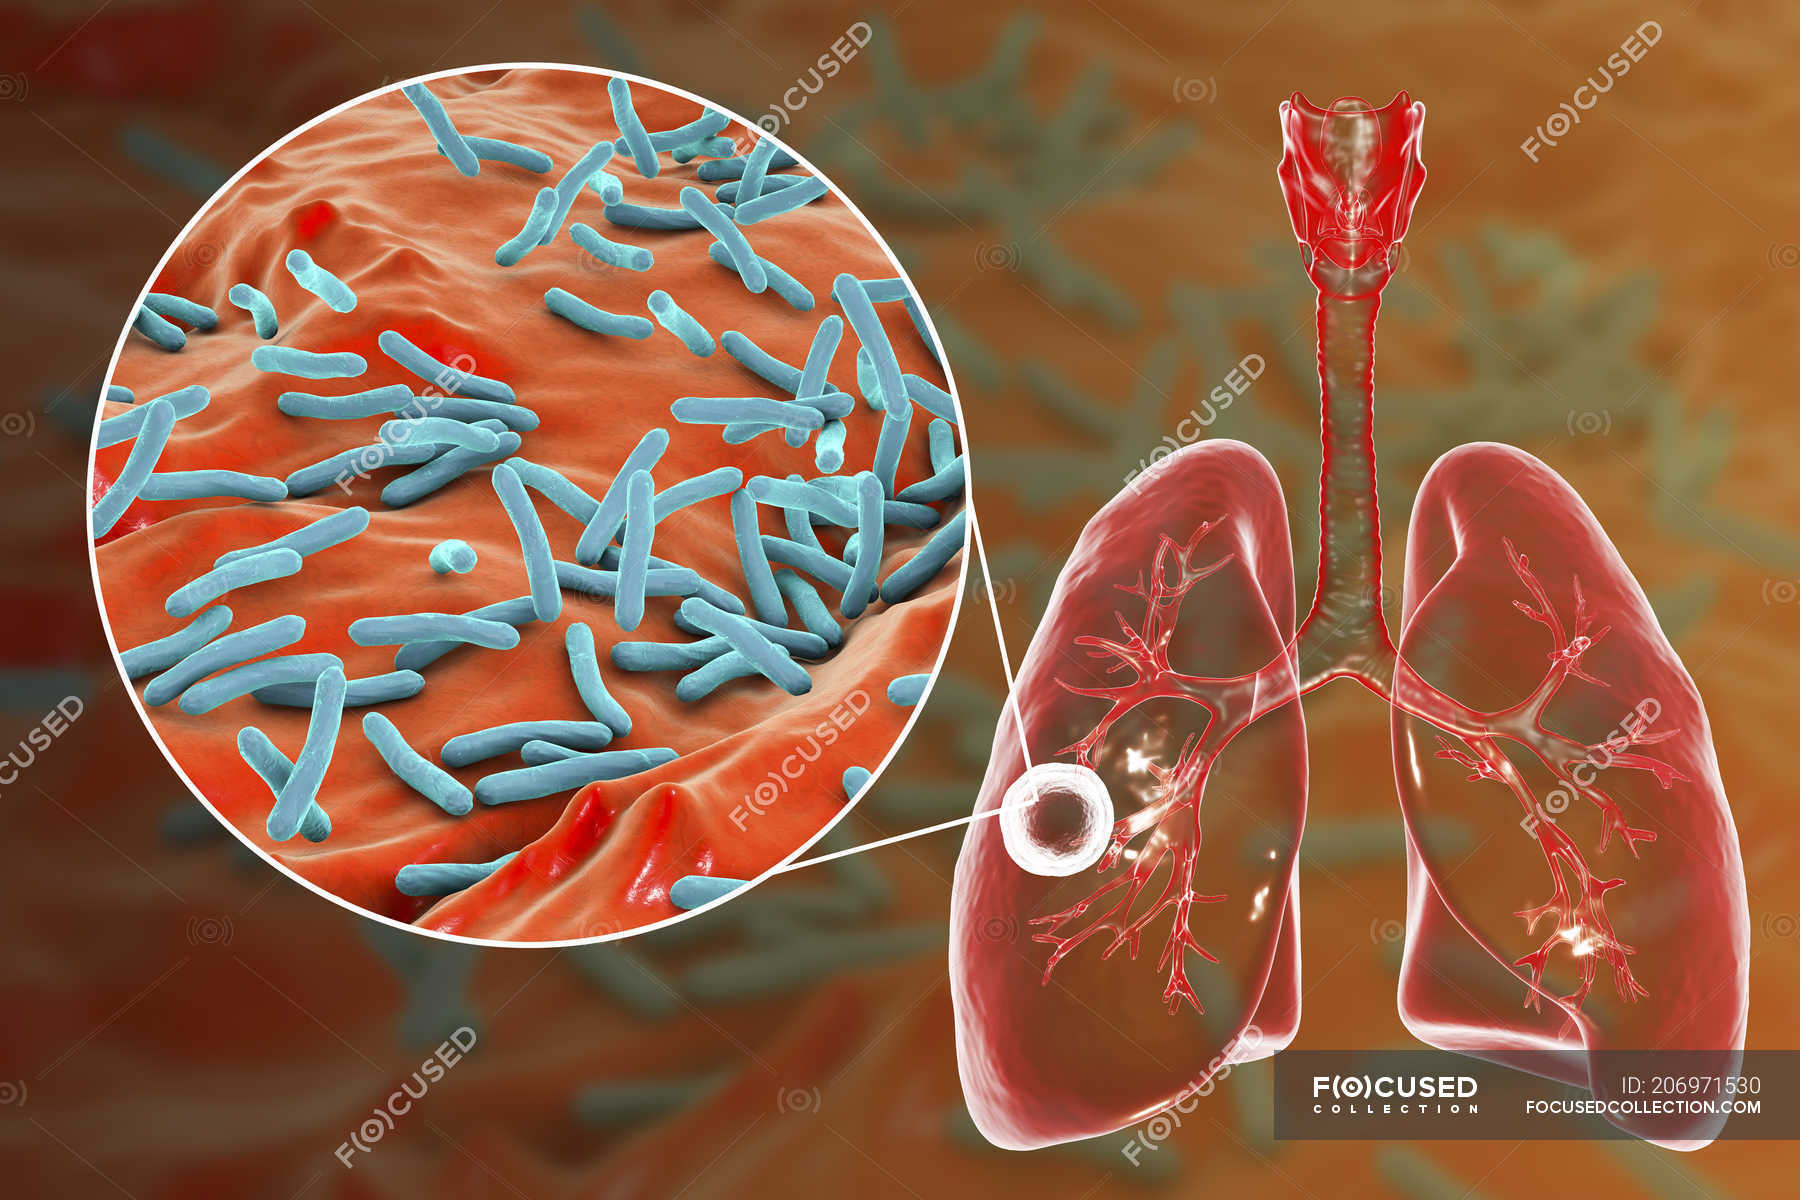 Tuberculosis pulmonar fibrocavernosa y primer plano de la bacteria